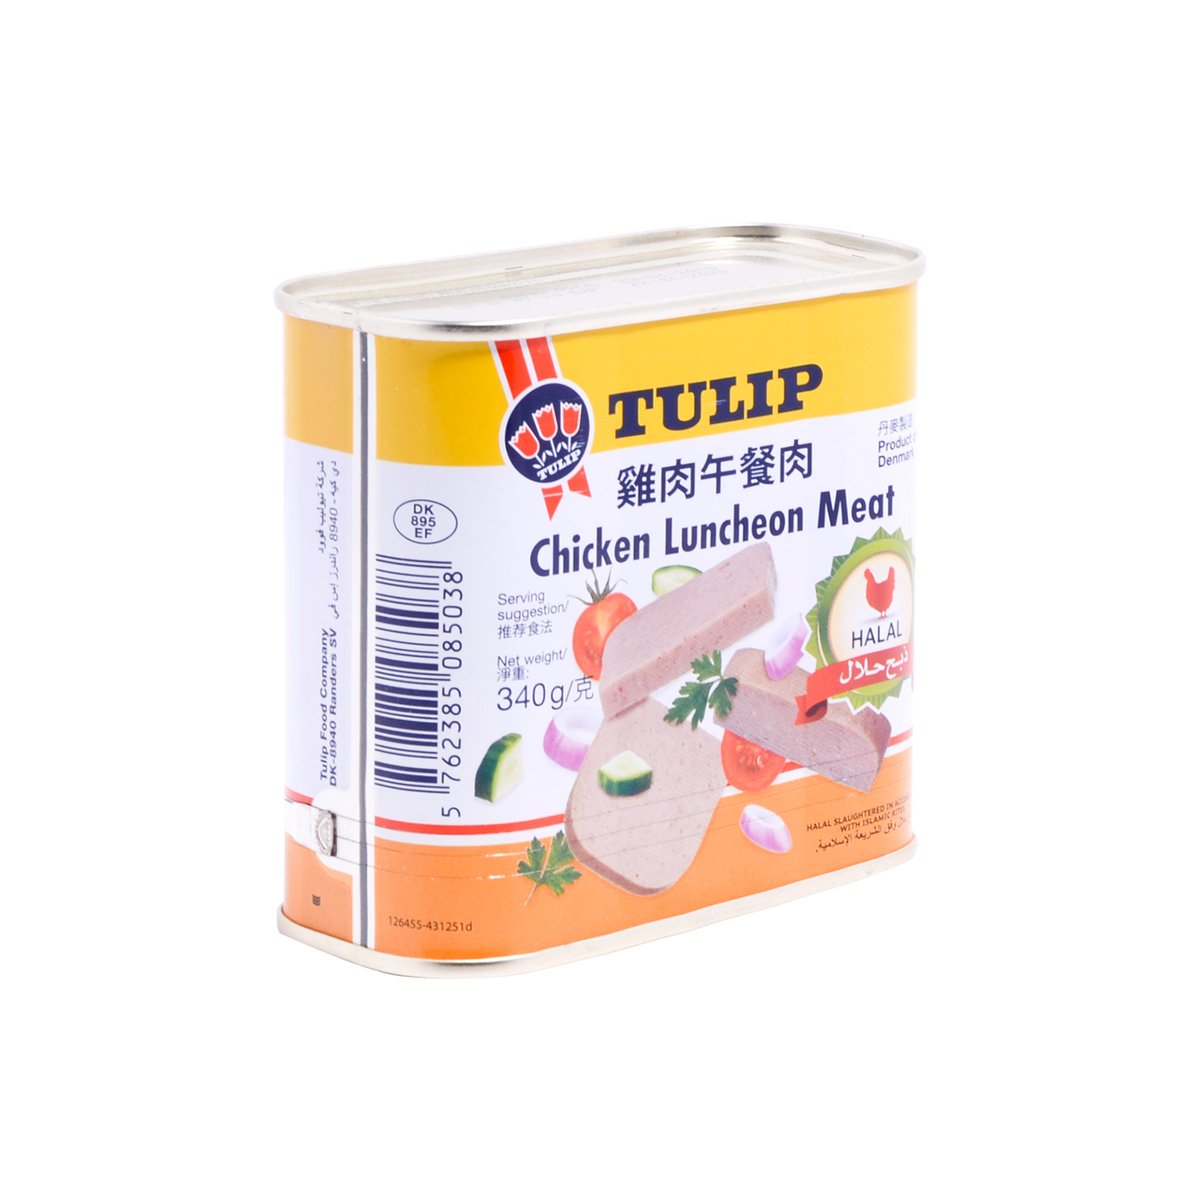 Tulip Chicken Luncheon Meat 340g